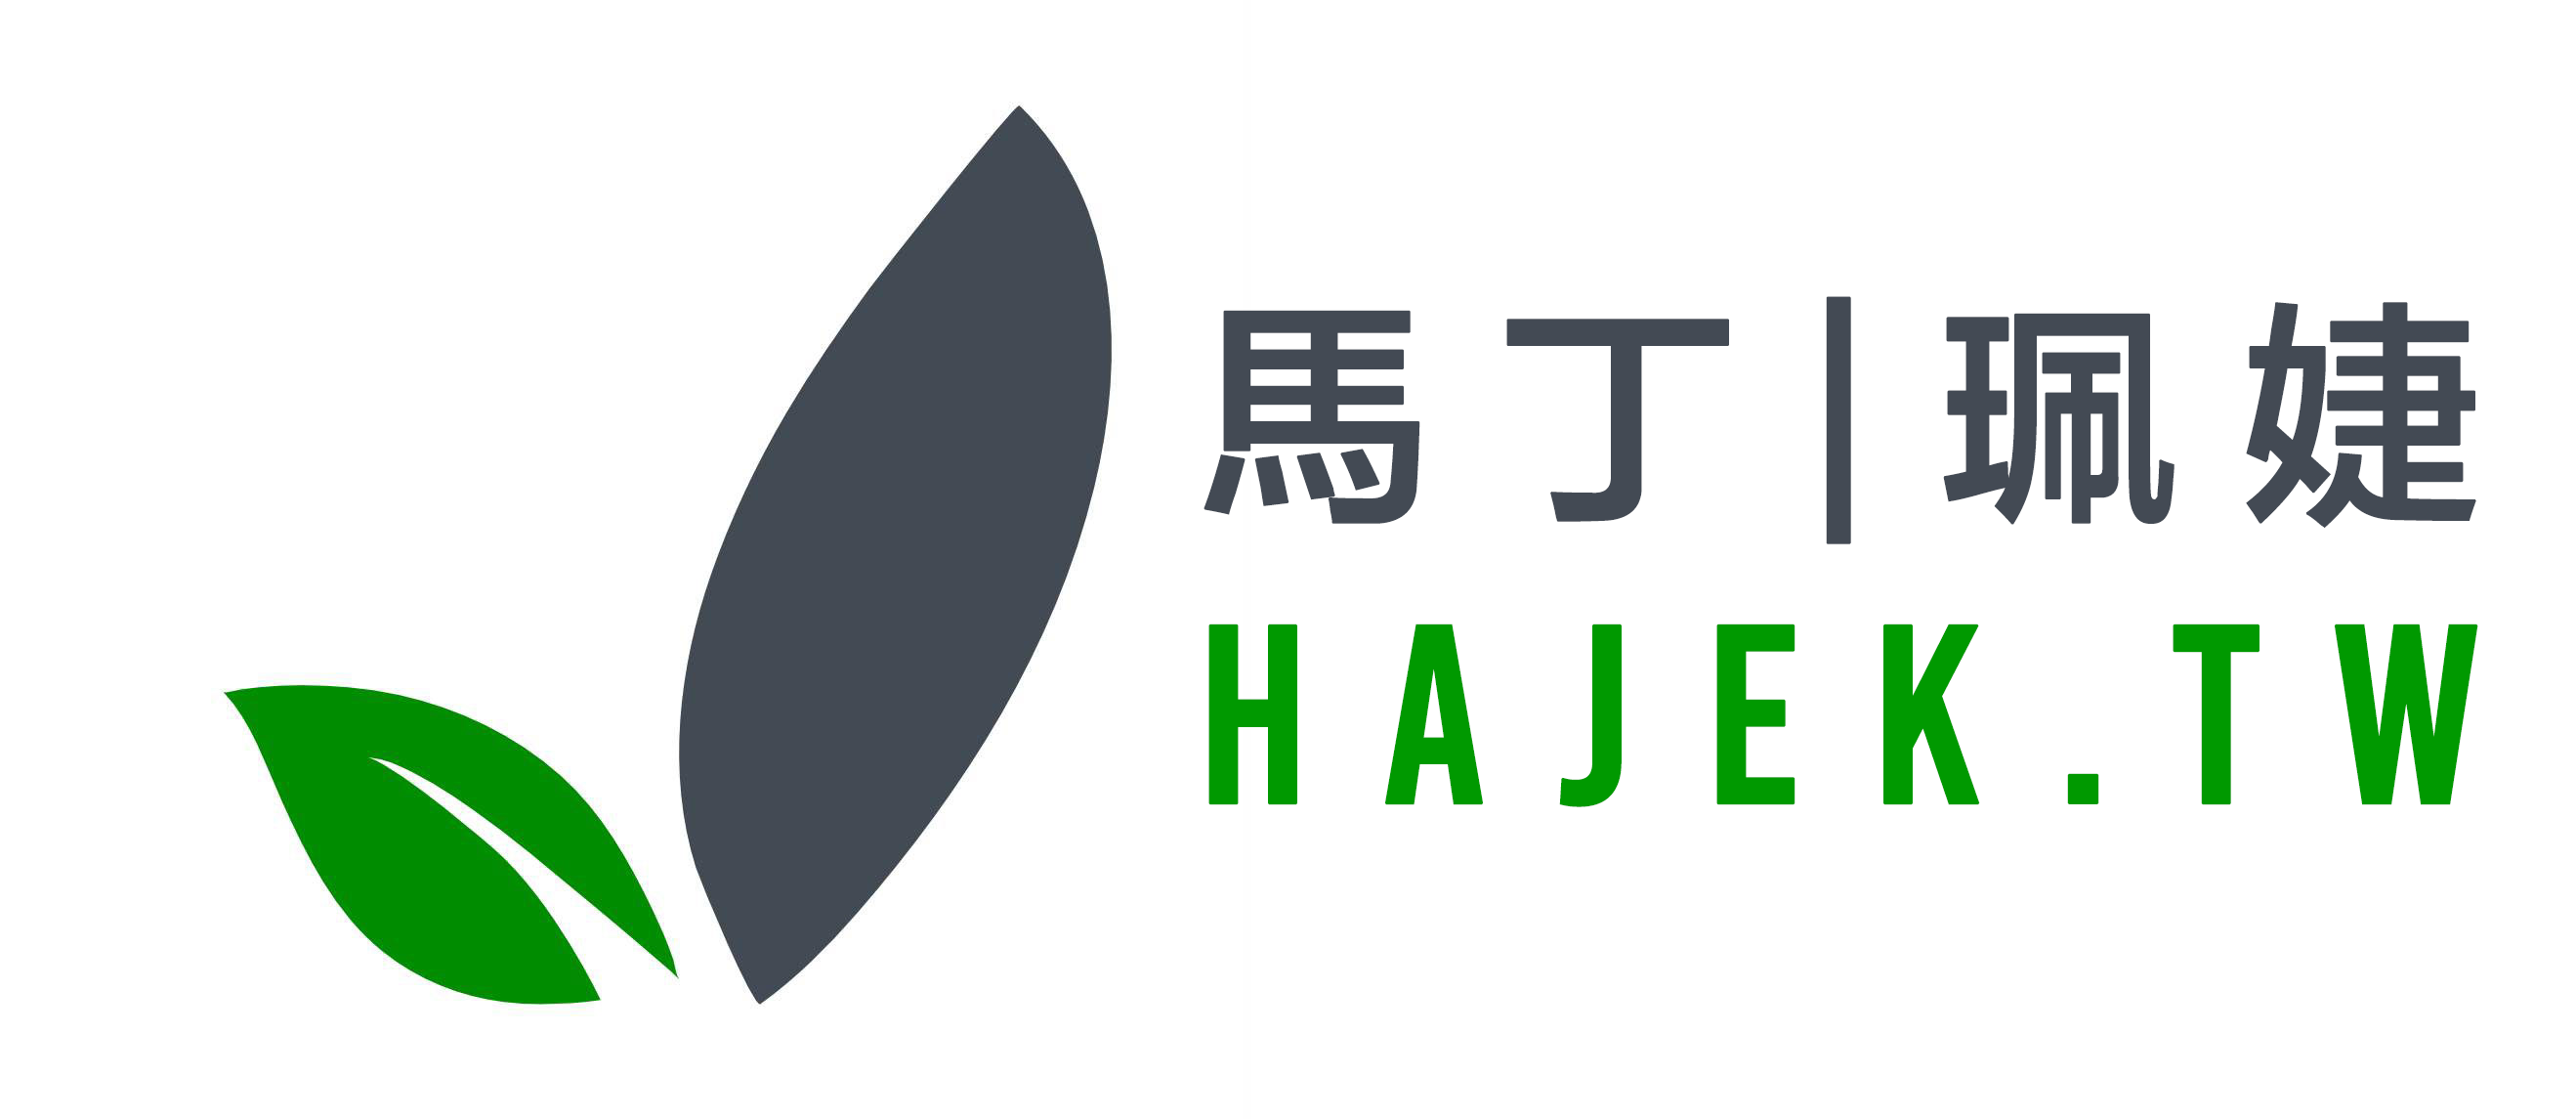 hajek.tw logo